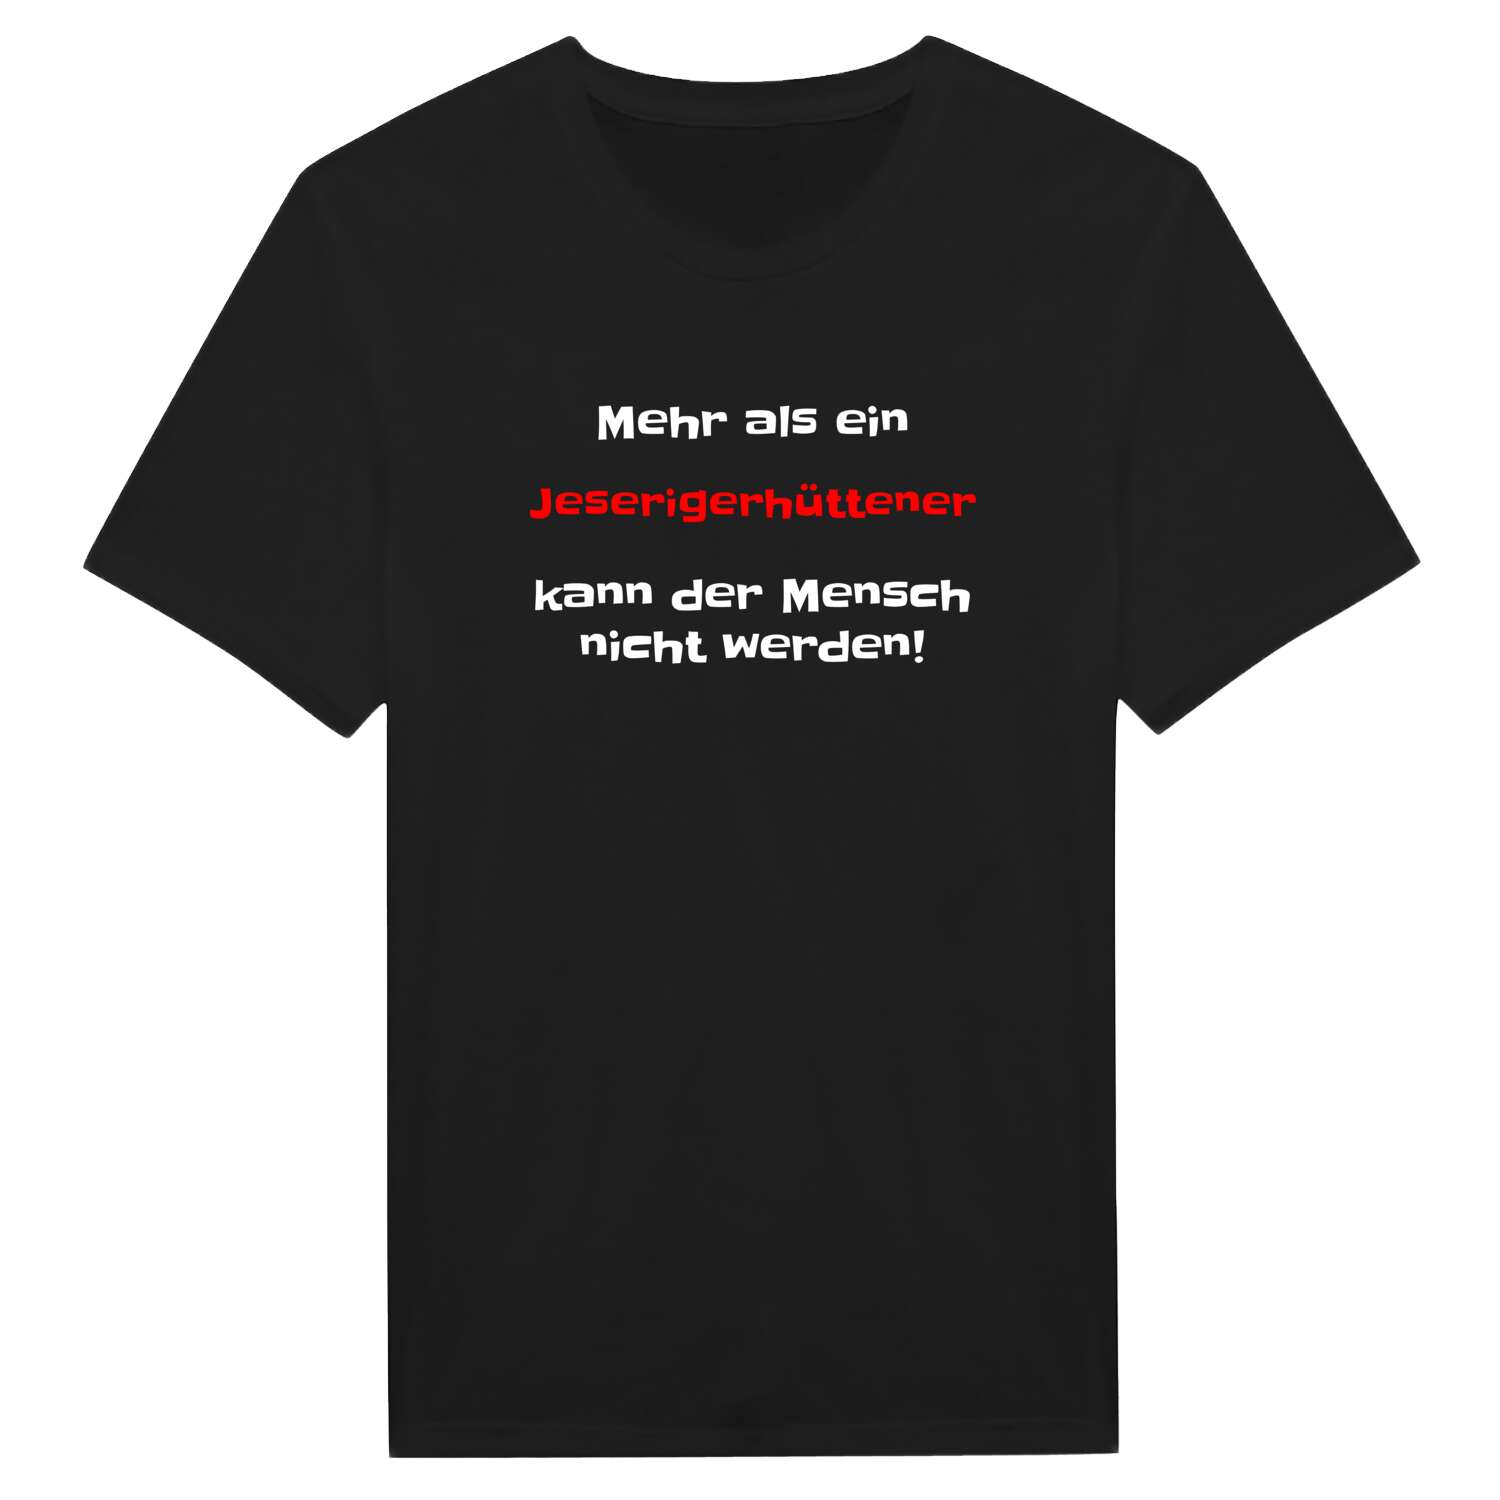 Jeserigerhütten T-Shirt »Mehr als ein«